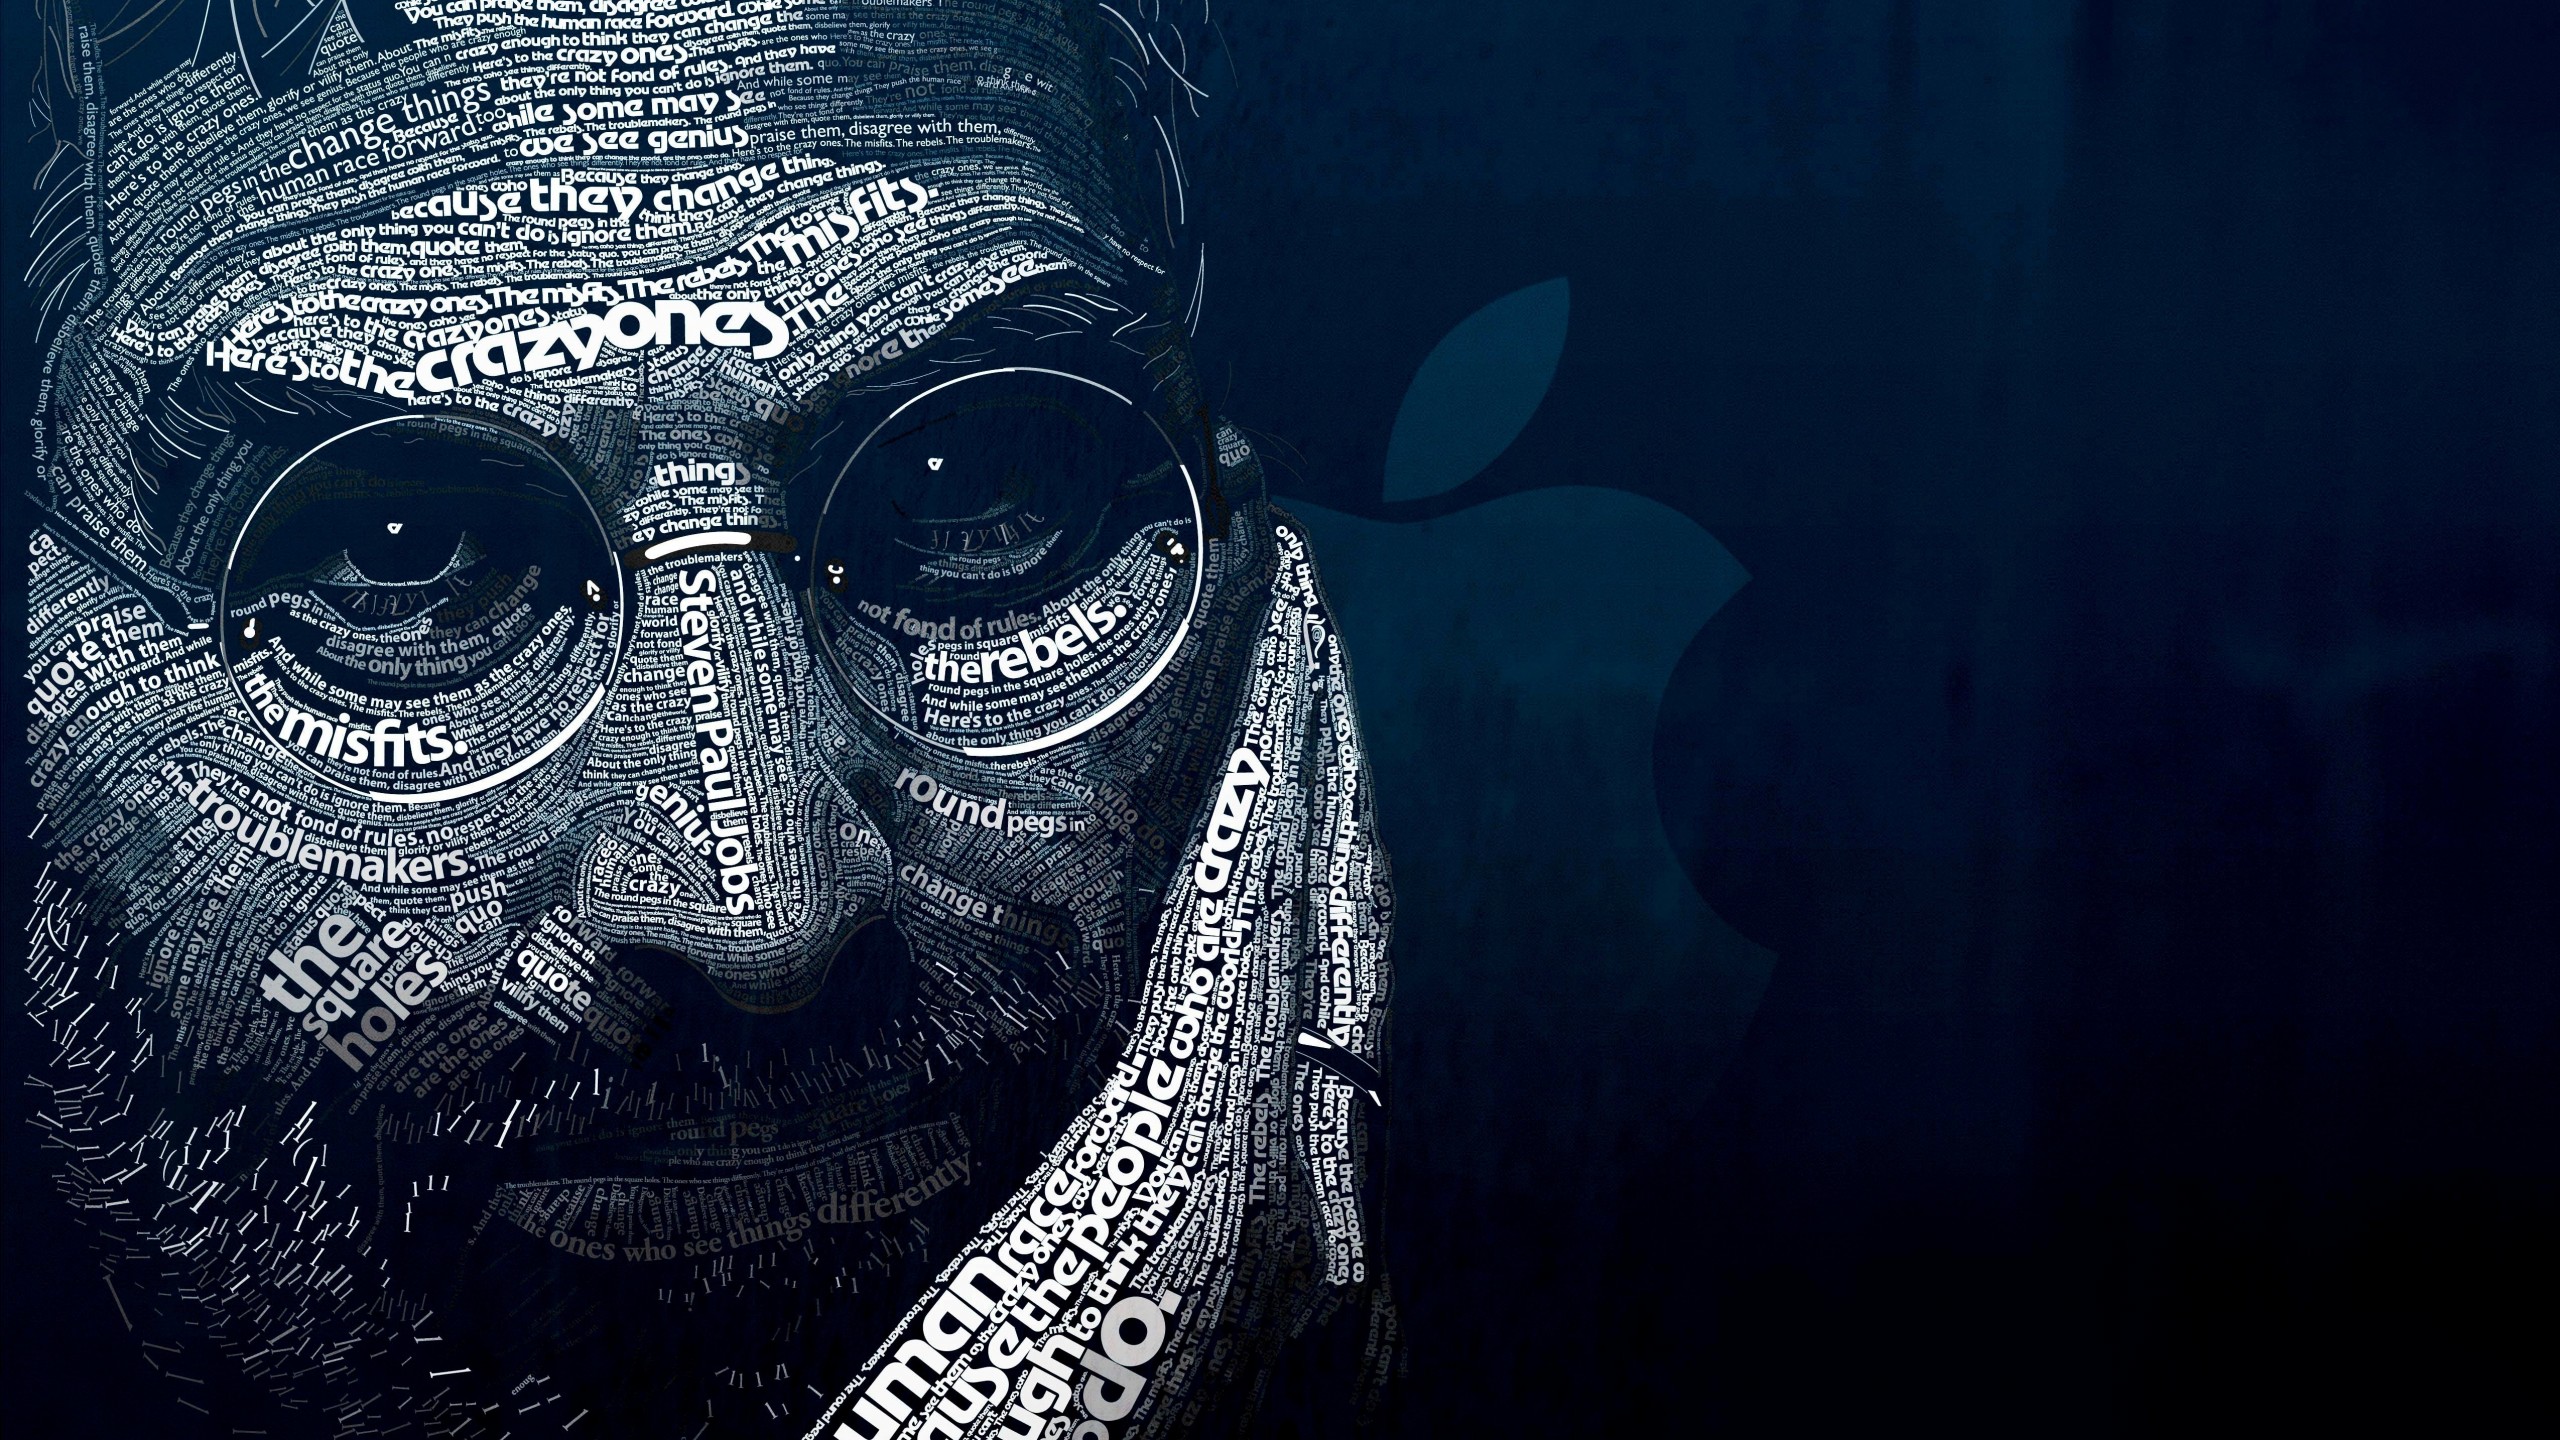 Steve Jobs Typographic Portrait Wallpaper for Social Media YouTube Channel Art